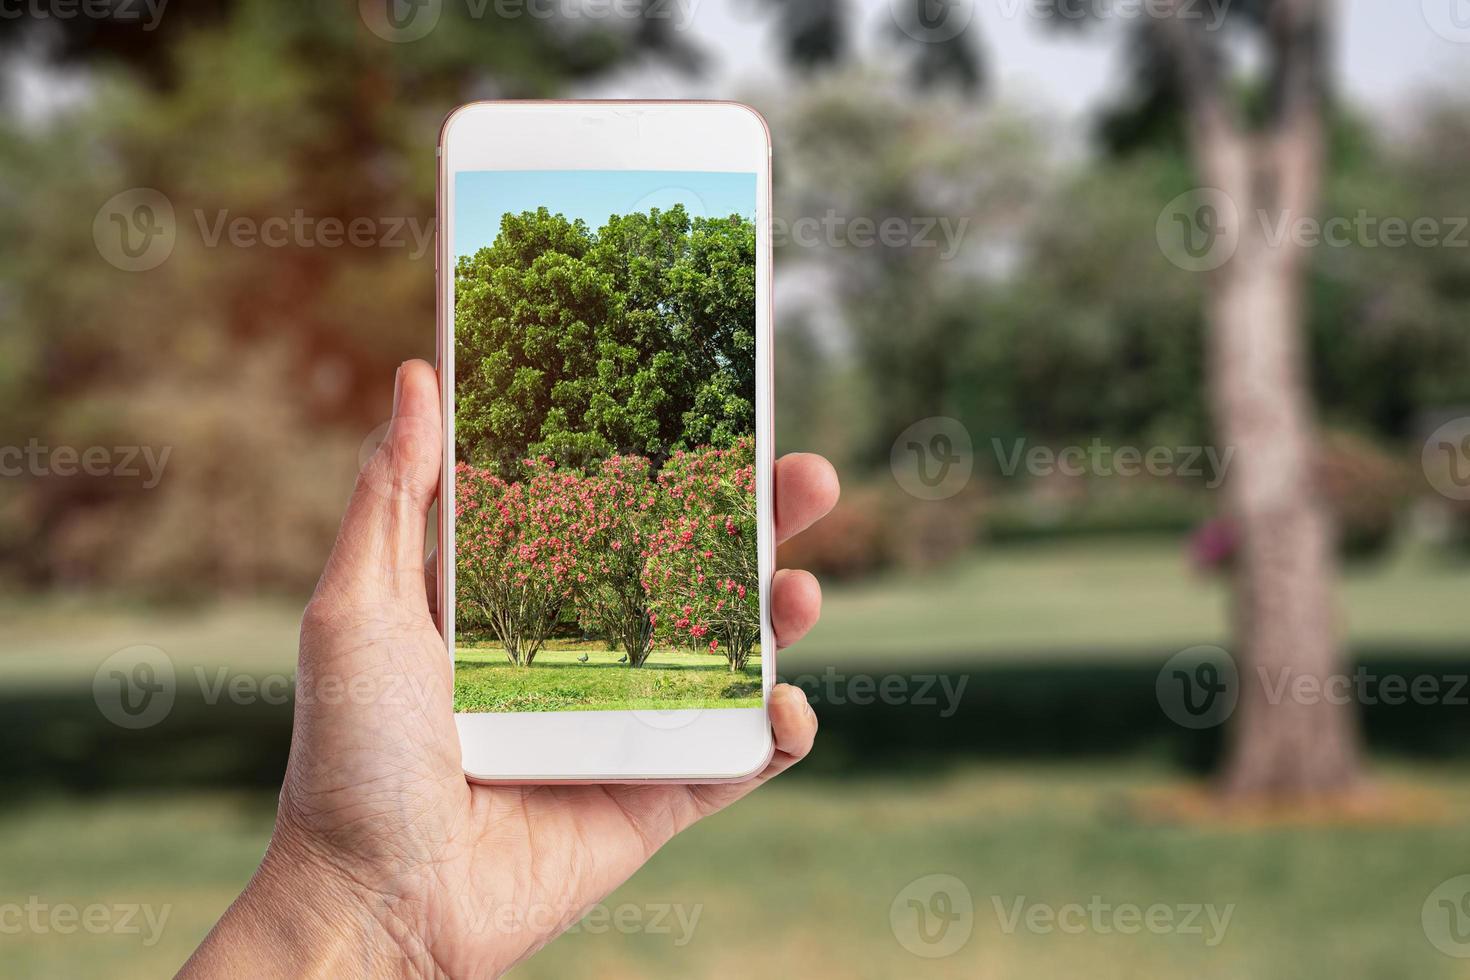 tirando foto com smartphone no parque natural, tecnologia e estilo de vida moderno.